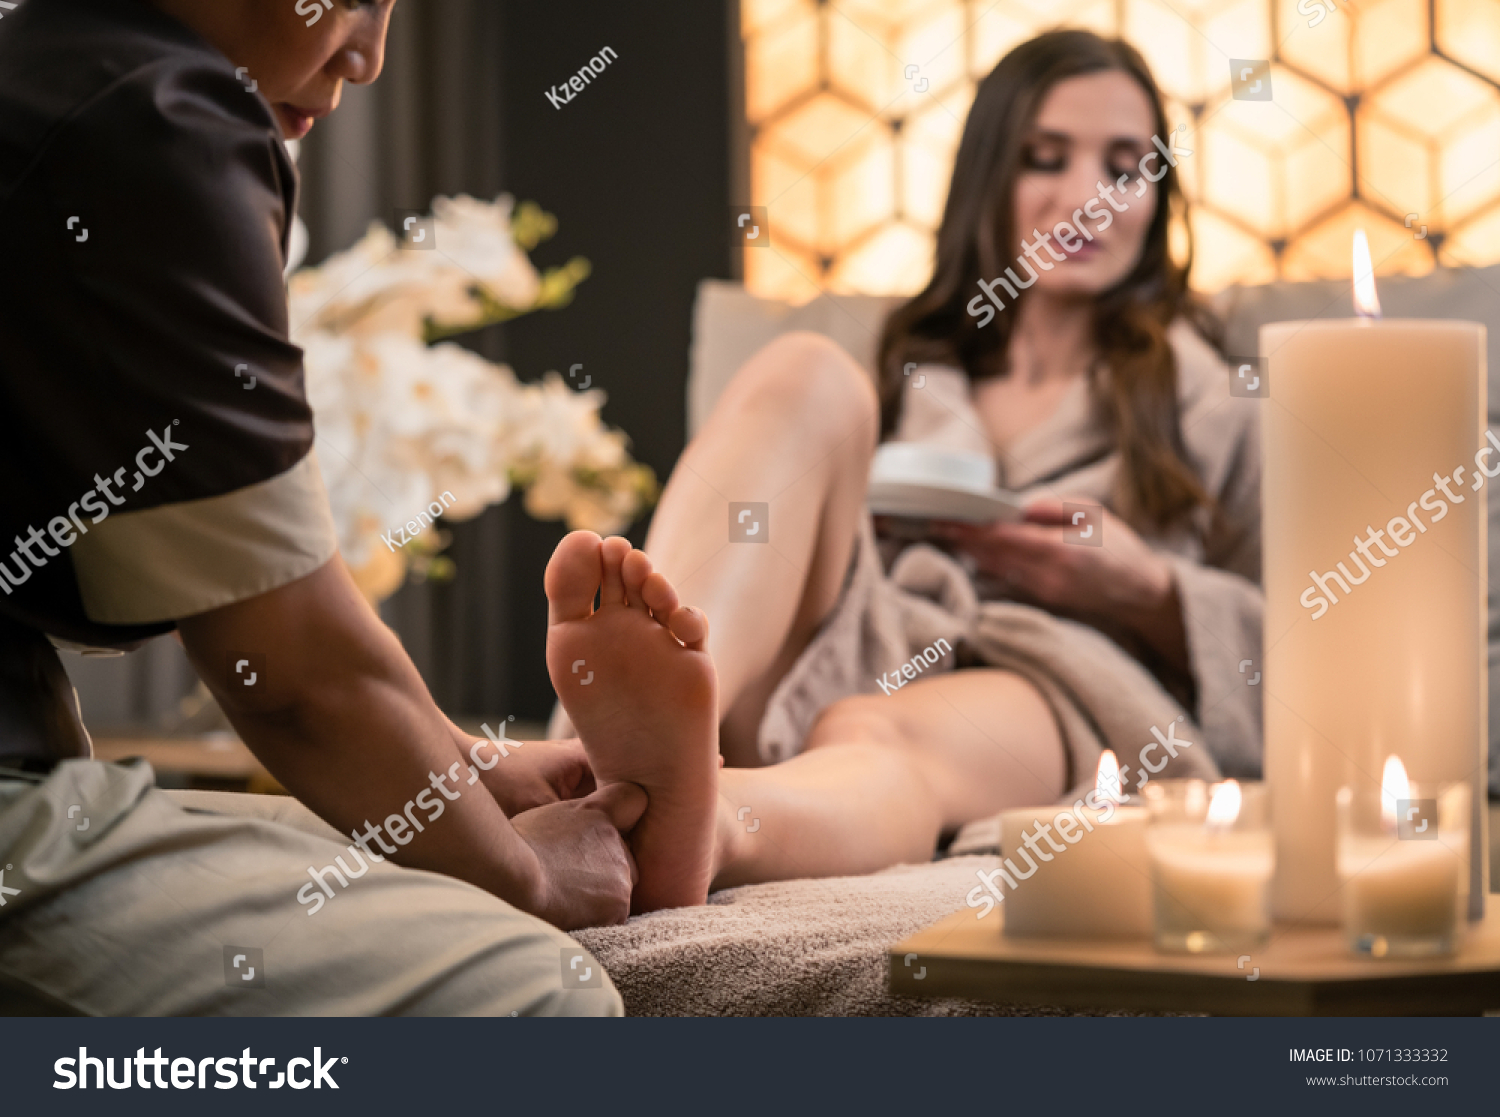 Кореянка мастурбирует под массаж ступней